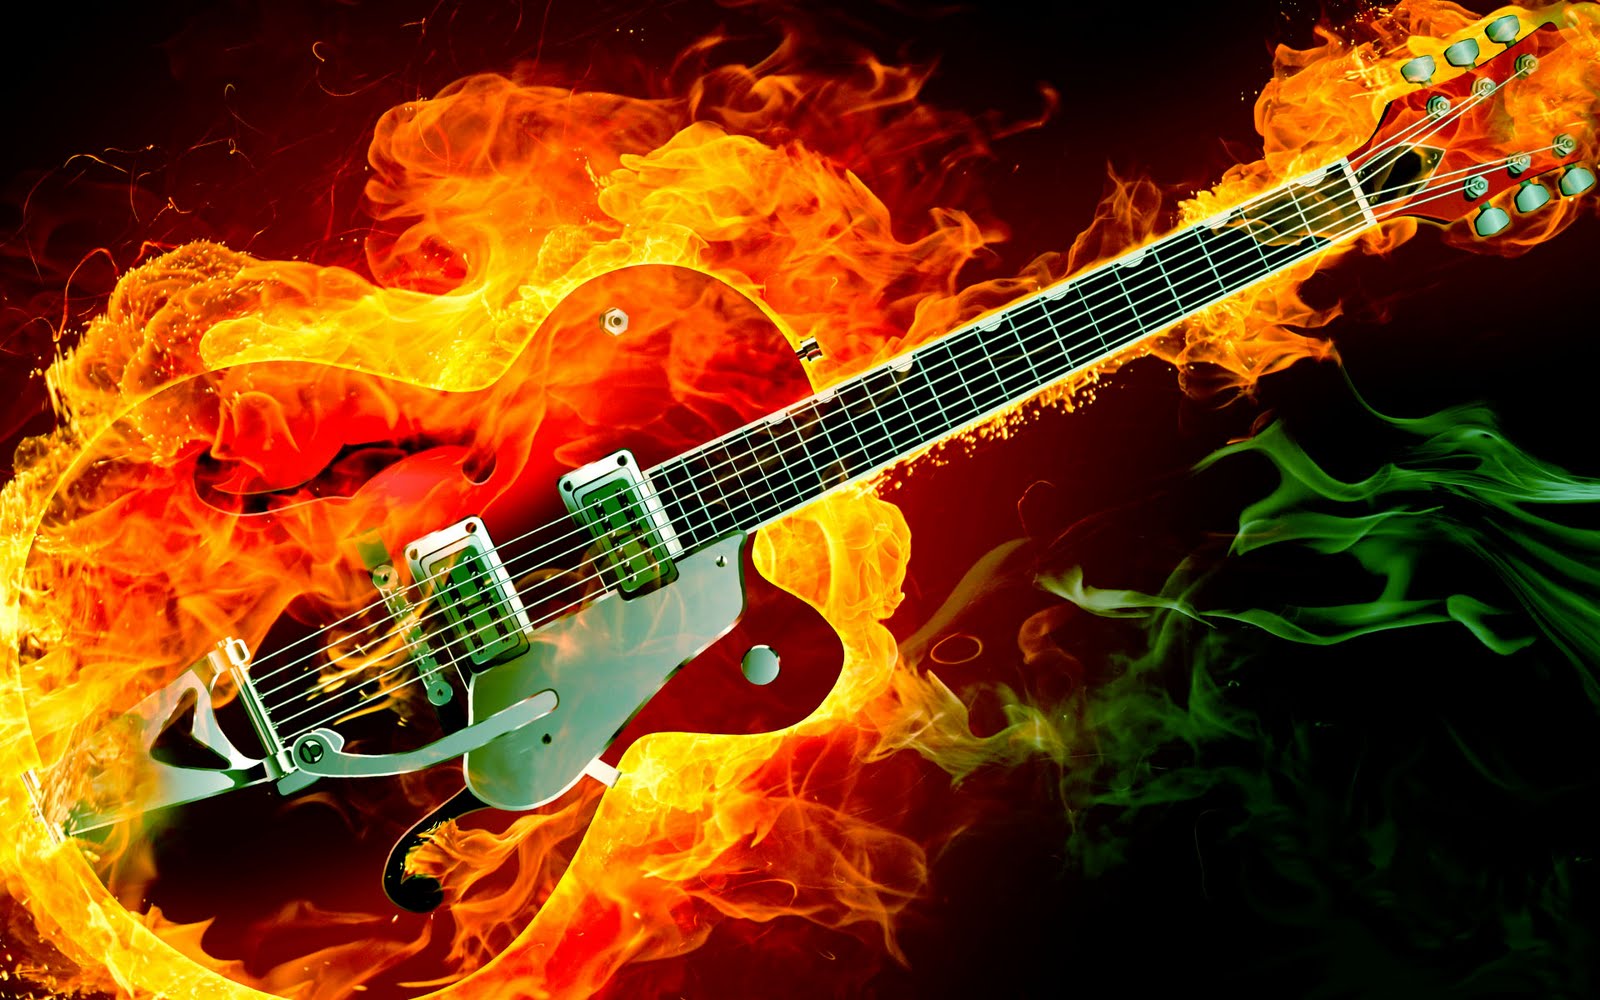 Guitar on Fire Wallpaper - WallpaperSafari